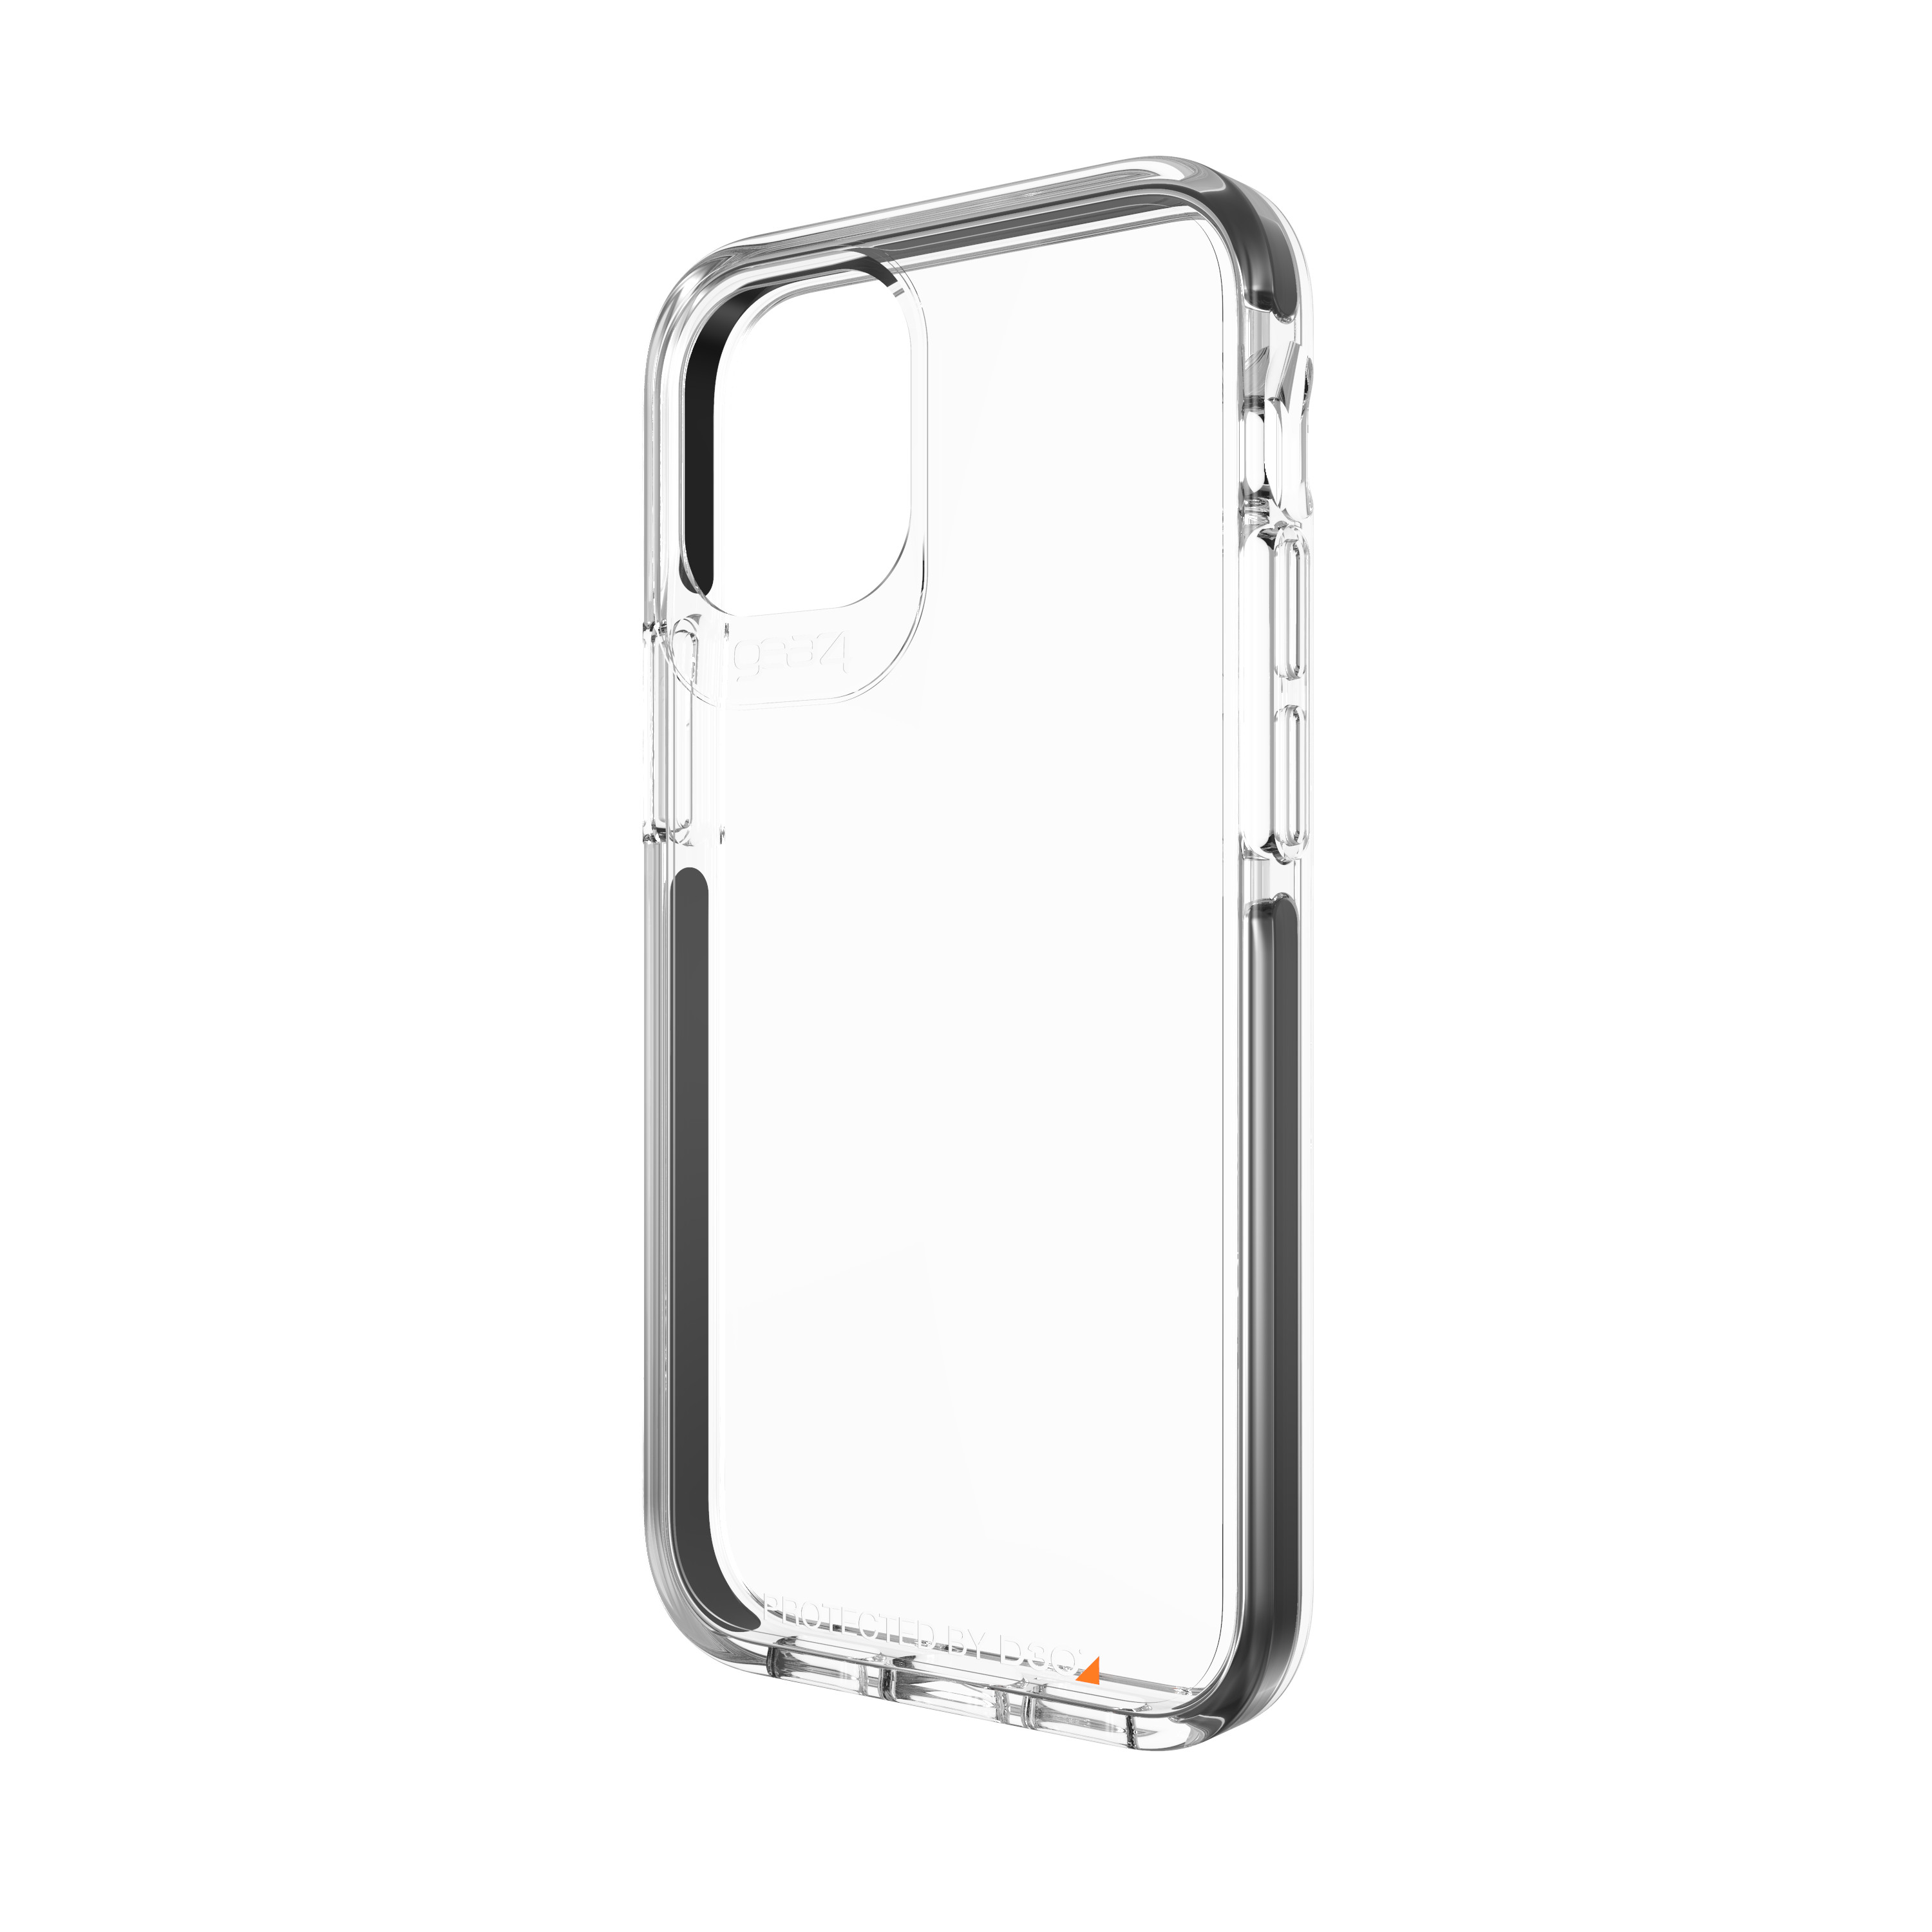 Ốp lưng Gear4 Piccadilly iPhone - Công nghệ chống sốc độc quyền D3O, kháng khuẩn, tương thích tốt với sóng 5G - Hàng chính hãng